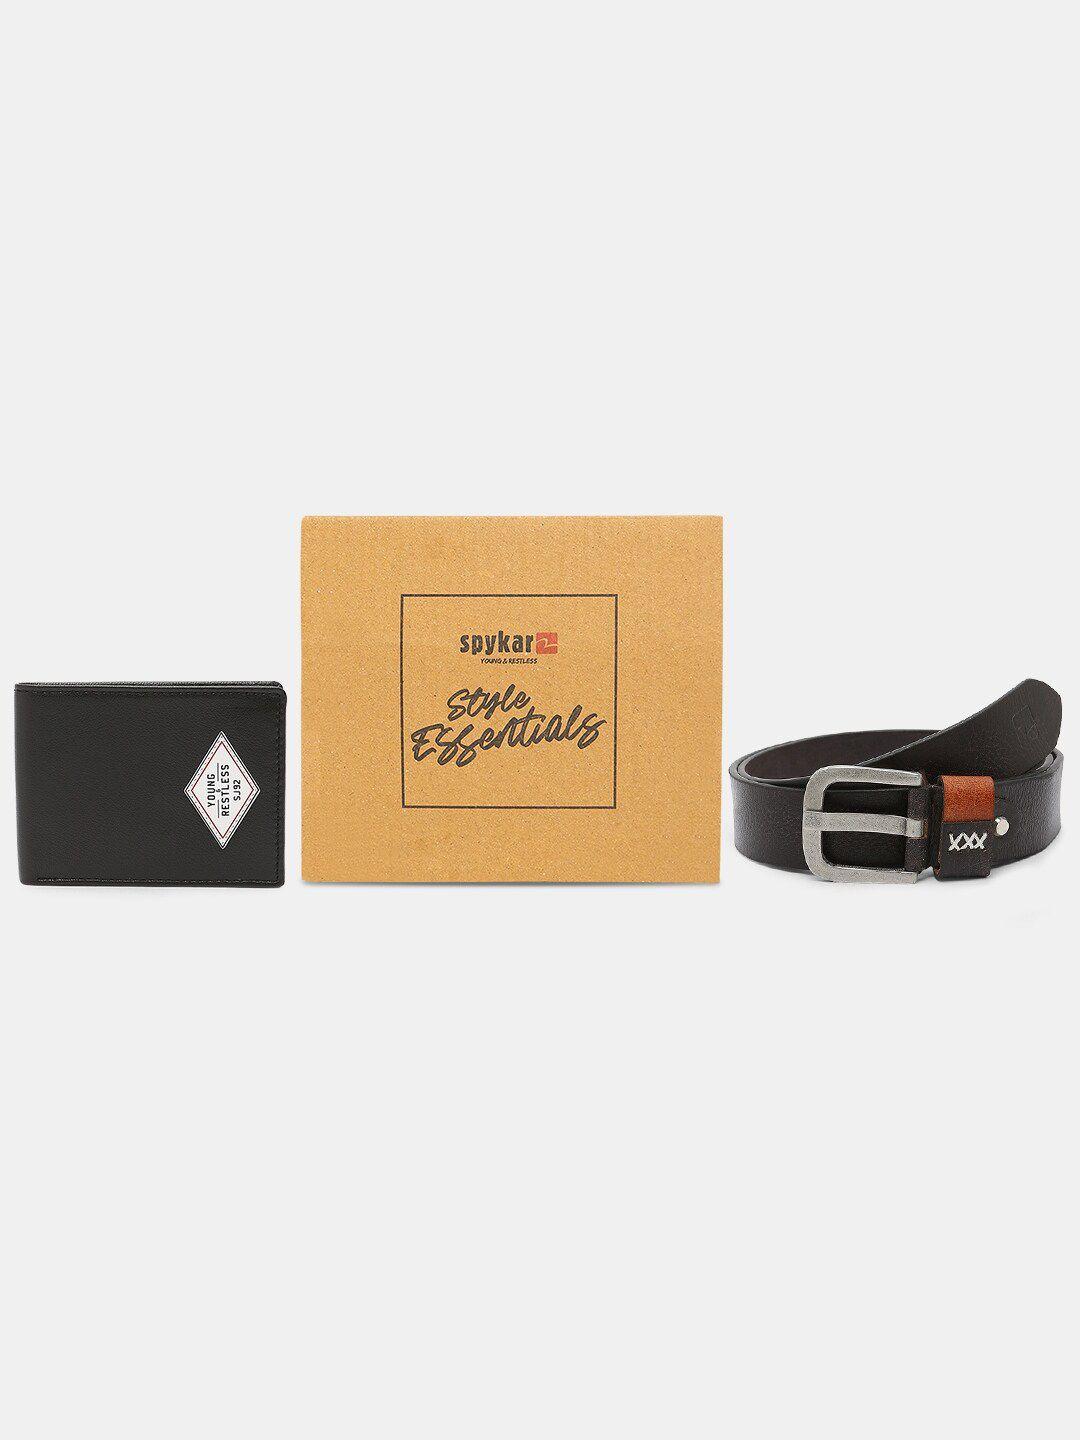 spykar leather belt & wallet combo